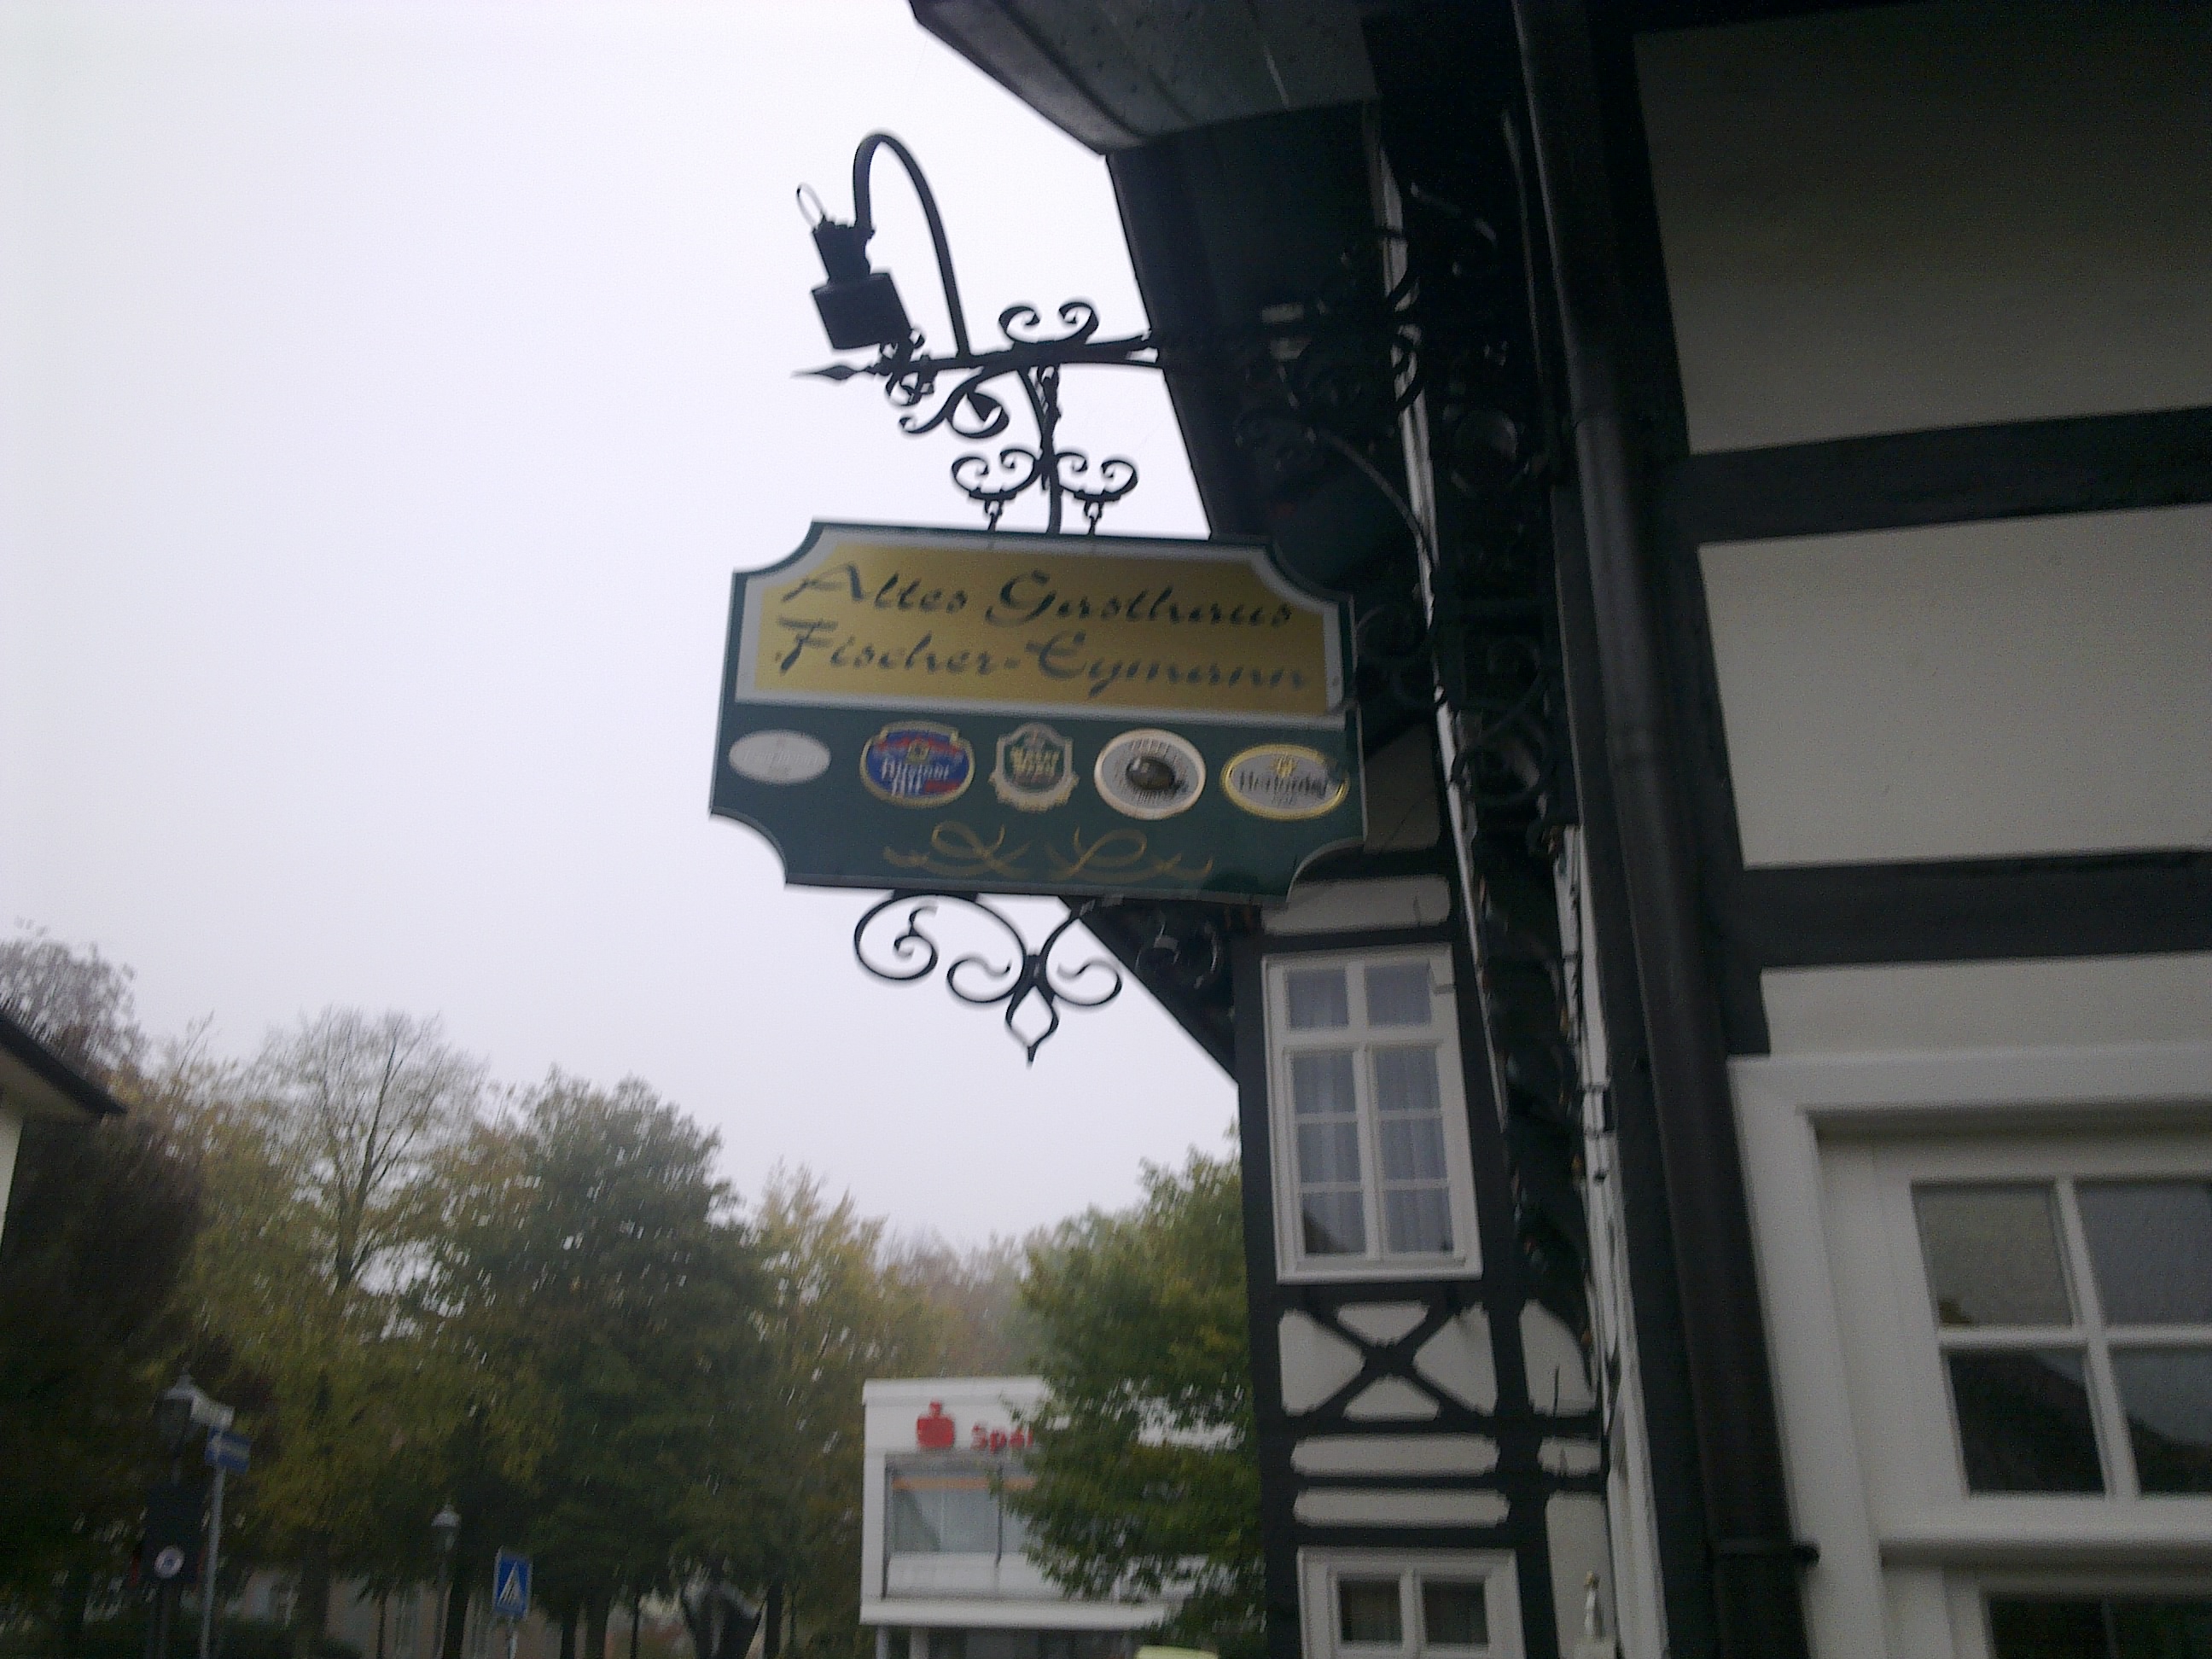 Bad Iburg, Altes Gasthaus Fischer Eymann.